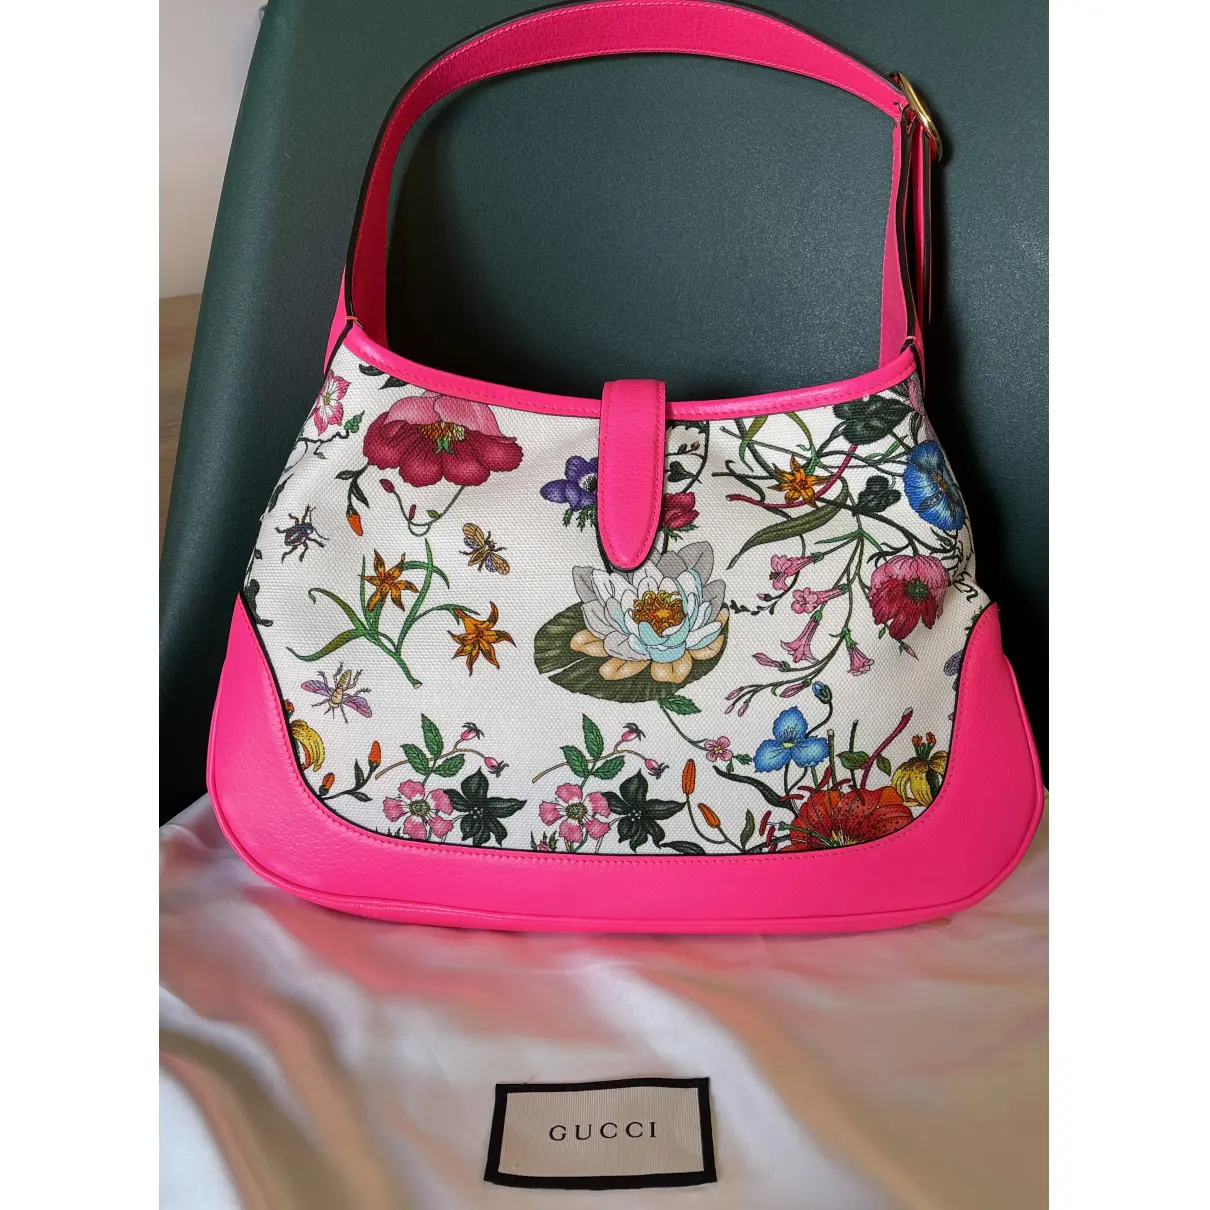 Buy Gucci Jackie 1961 cloth handbag online